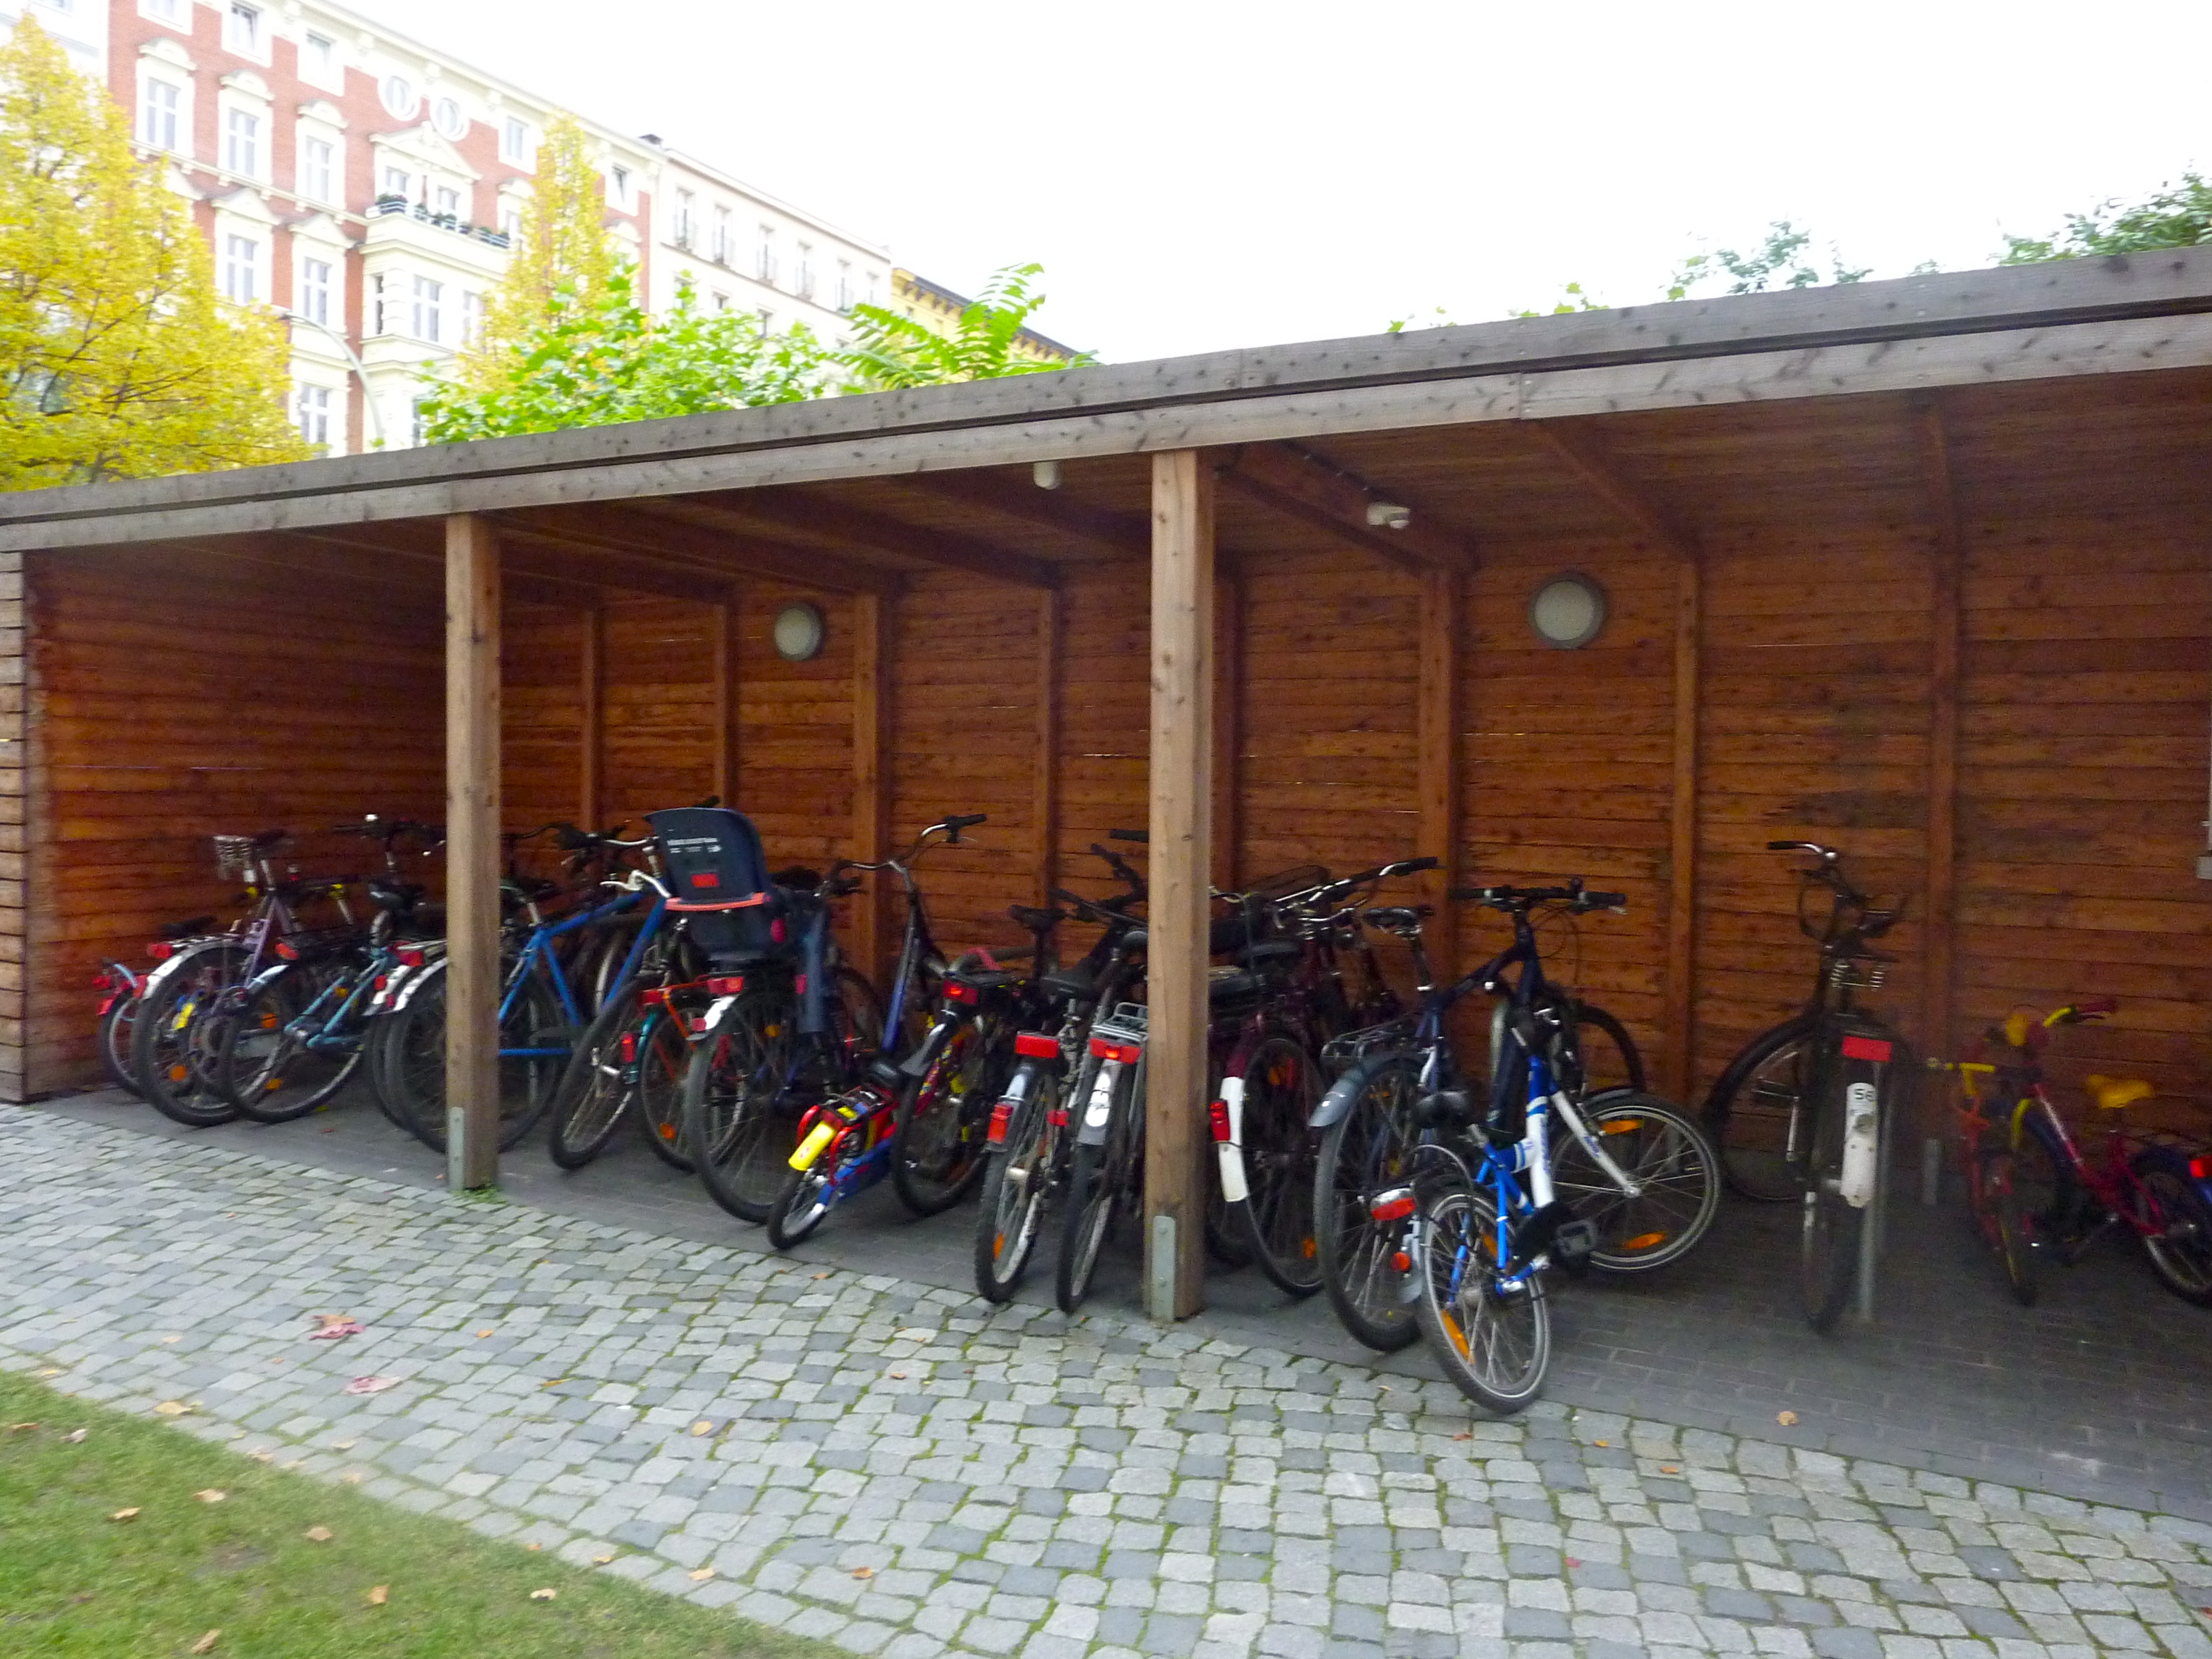 Sheltered bike parking